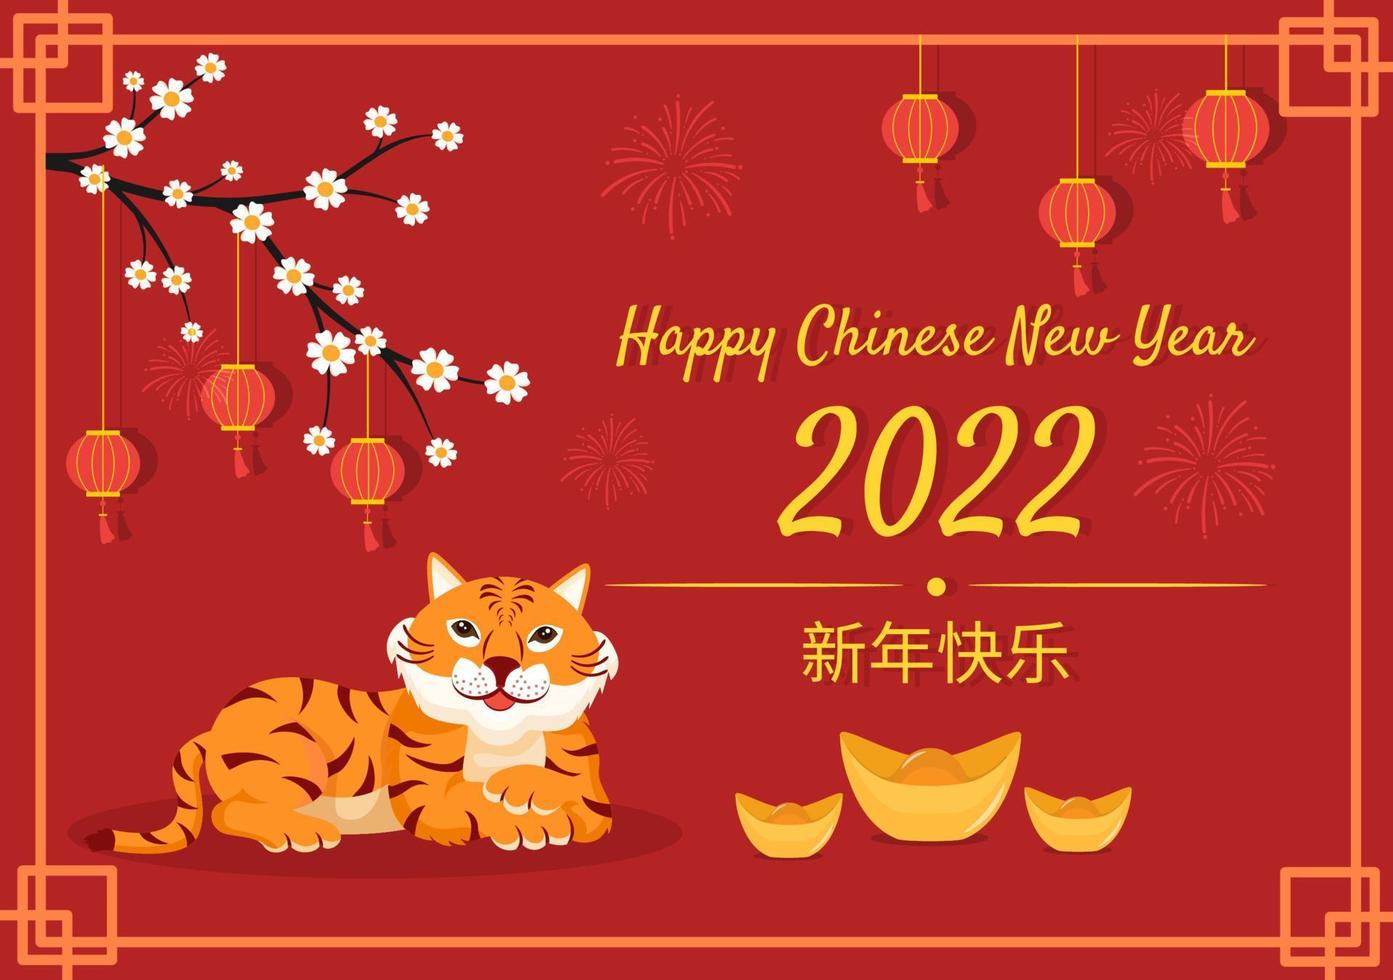 joyeux nouvel an chinois 2022 avec tigre mignon du zodiaque et fleur sur fond rouge pour carte de voeux, calendrier ou affiche en illustration de conception plate vecteur